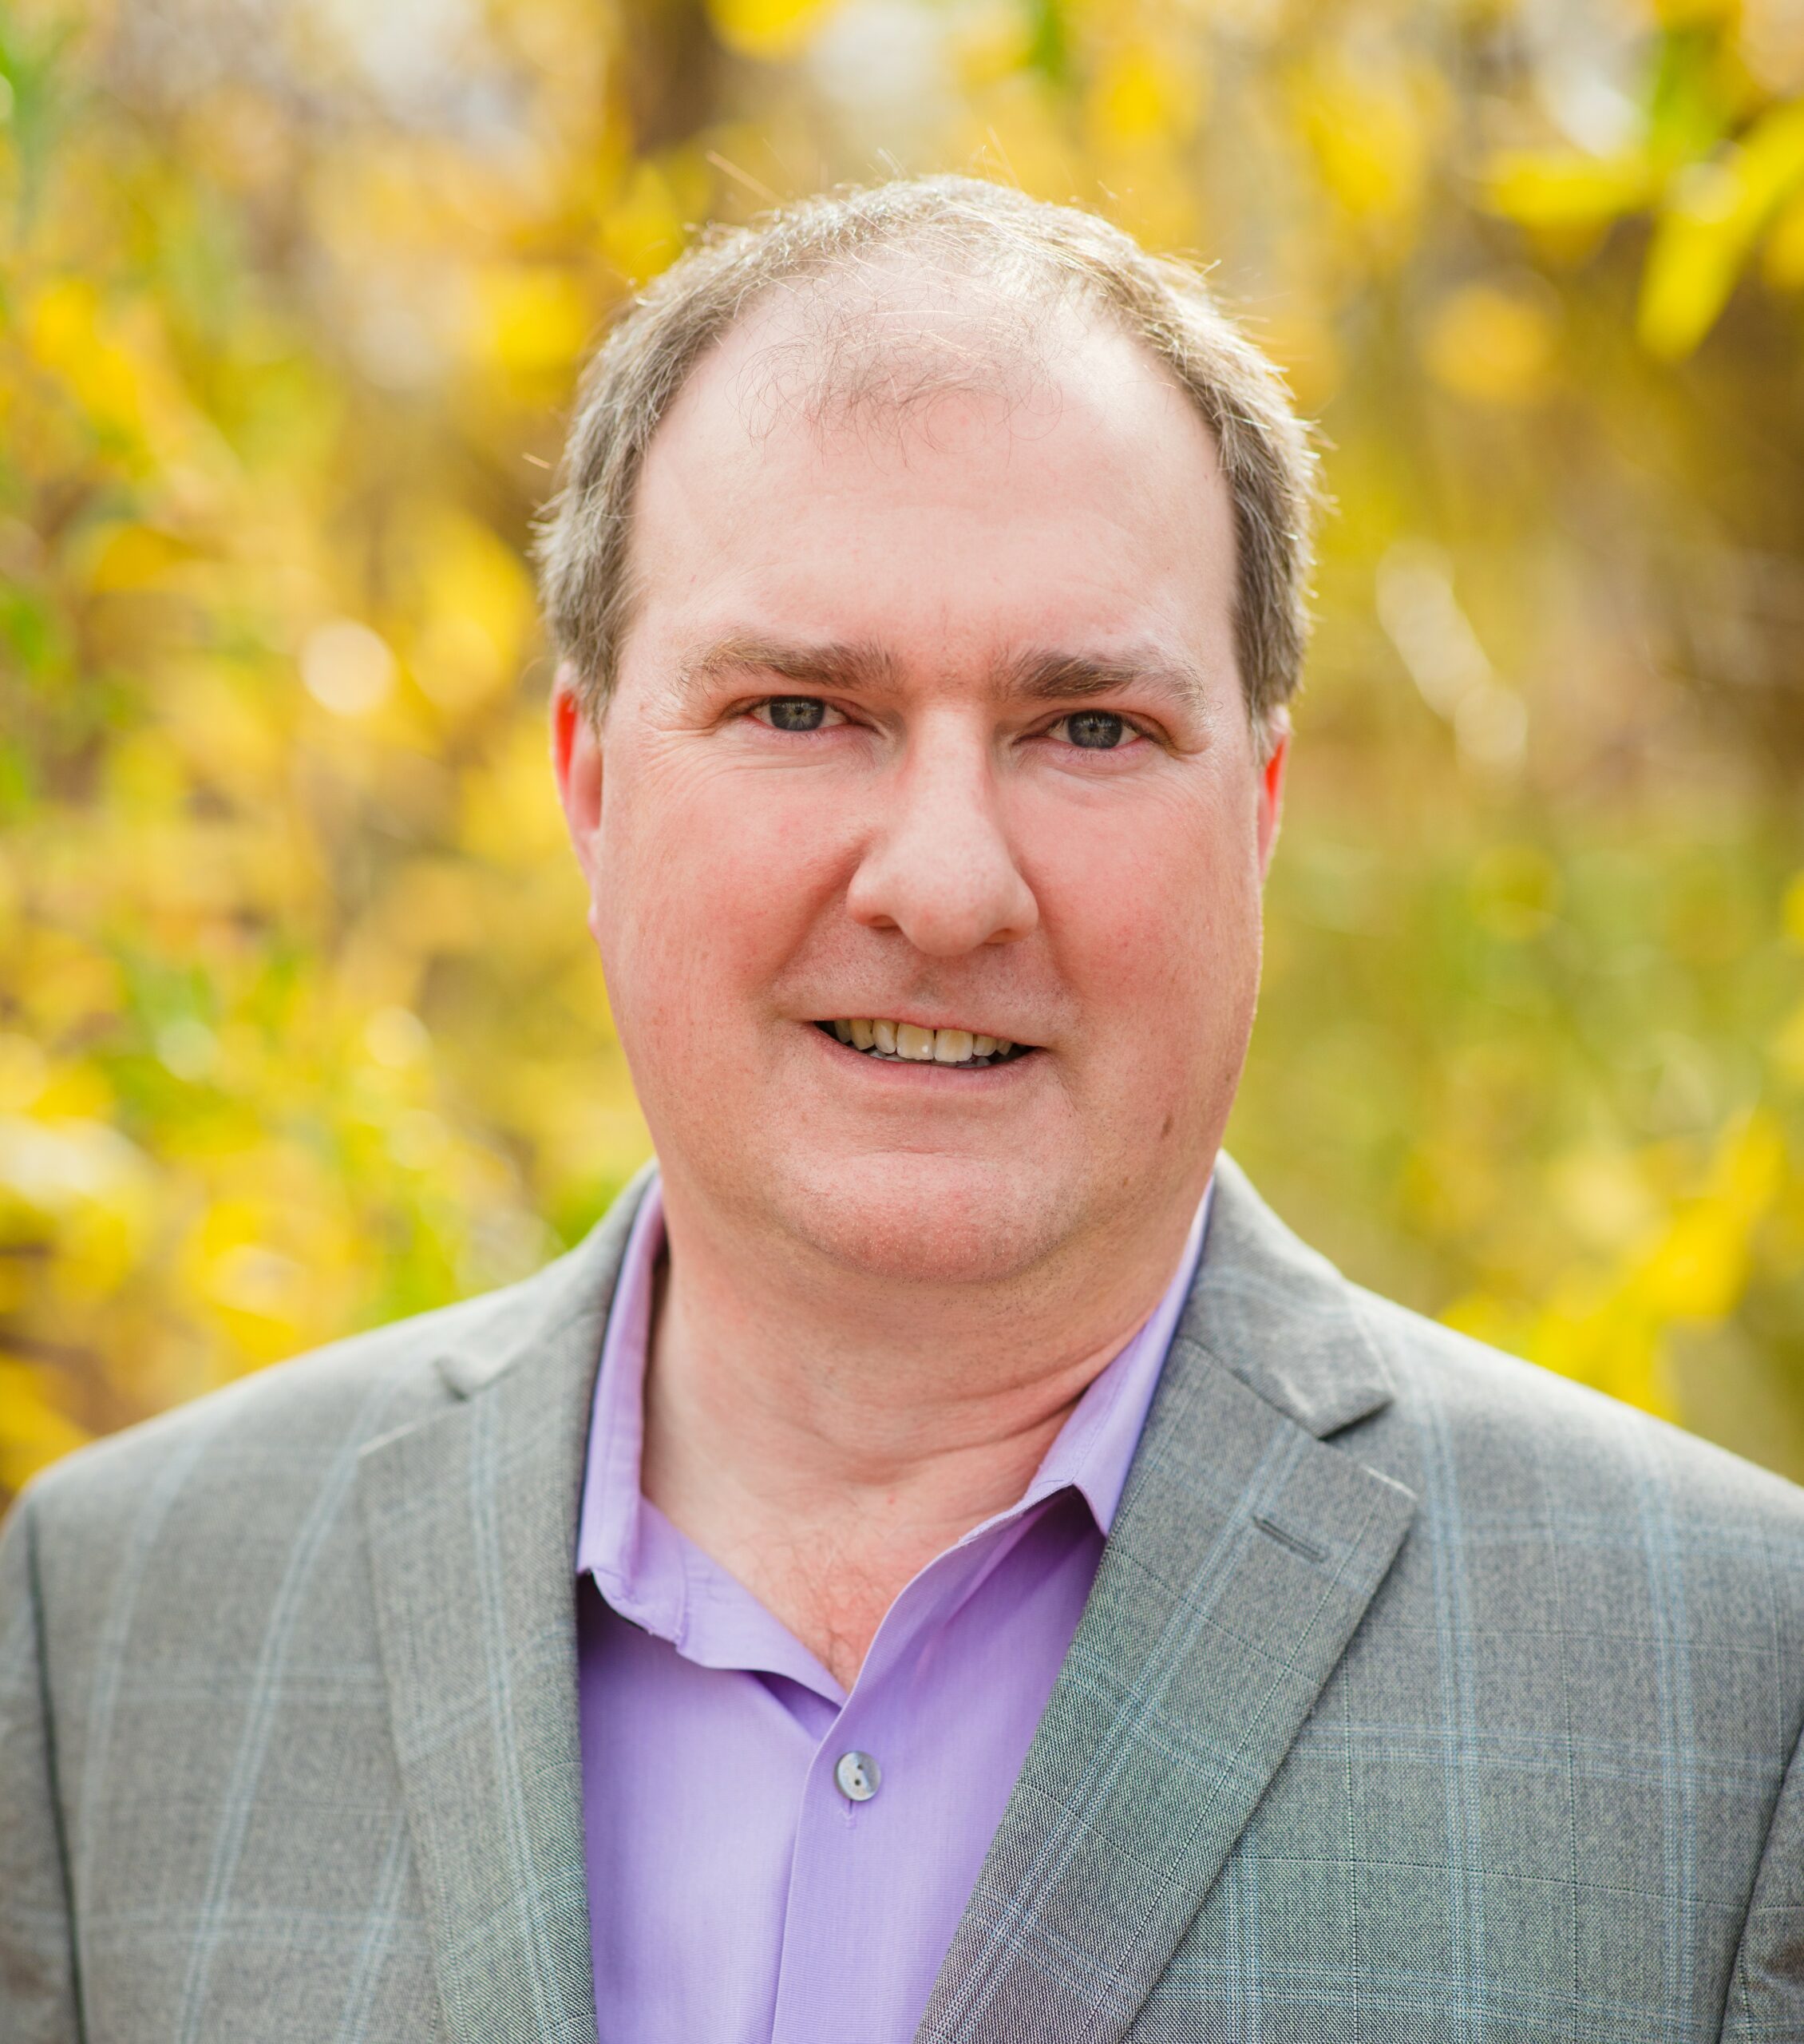 Aaron Brockett is ‘already on the ground running’ as Boulder’s mayor